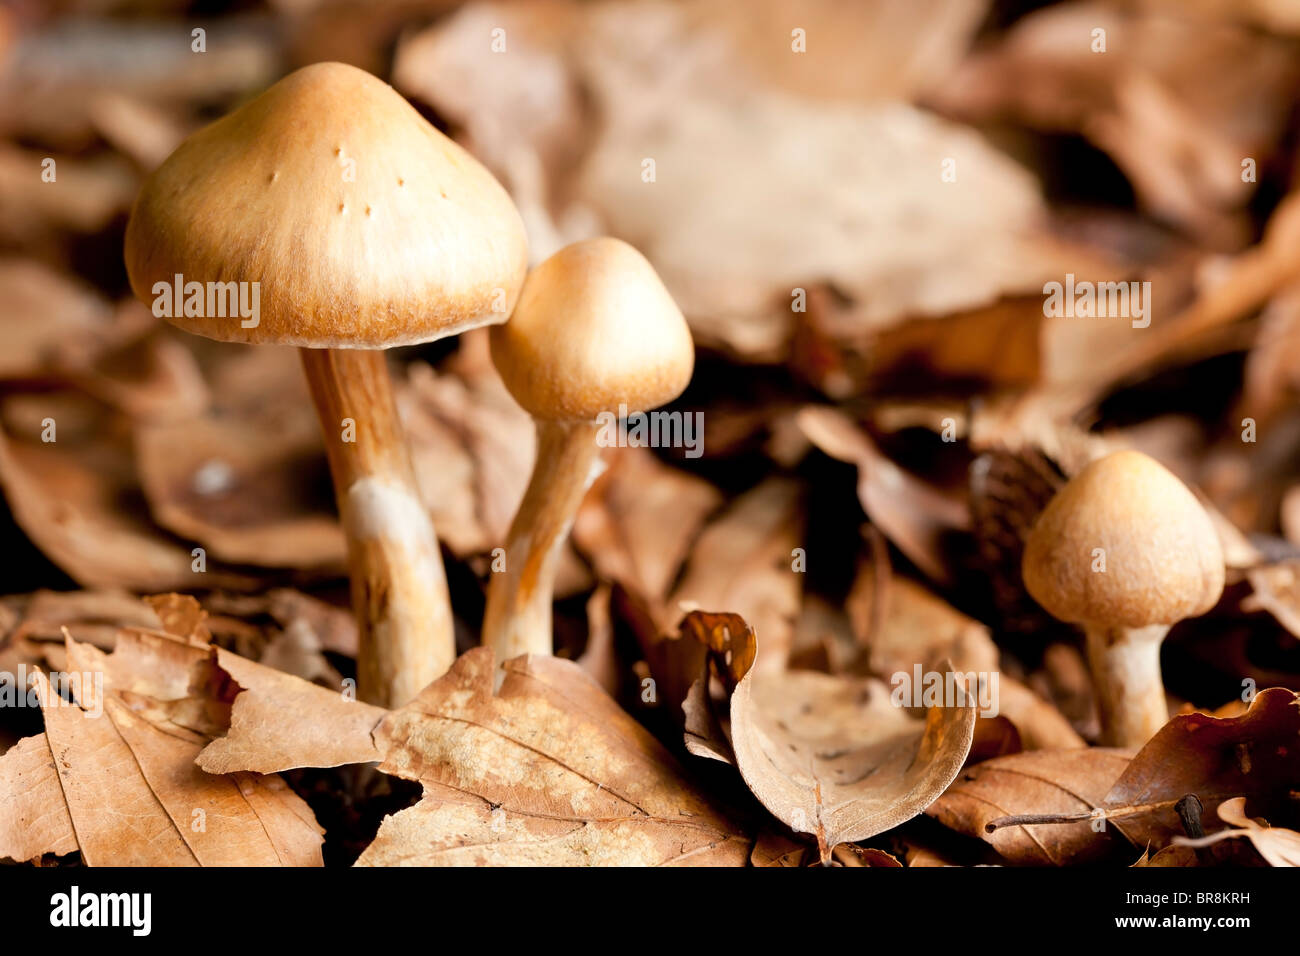 Young Surprise webcap mushrooms (Cortinarius semisanguineus) Stock Photo